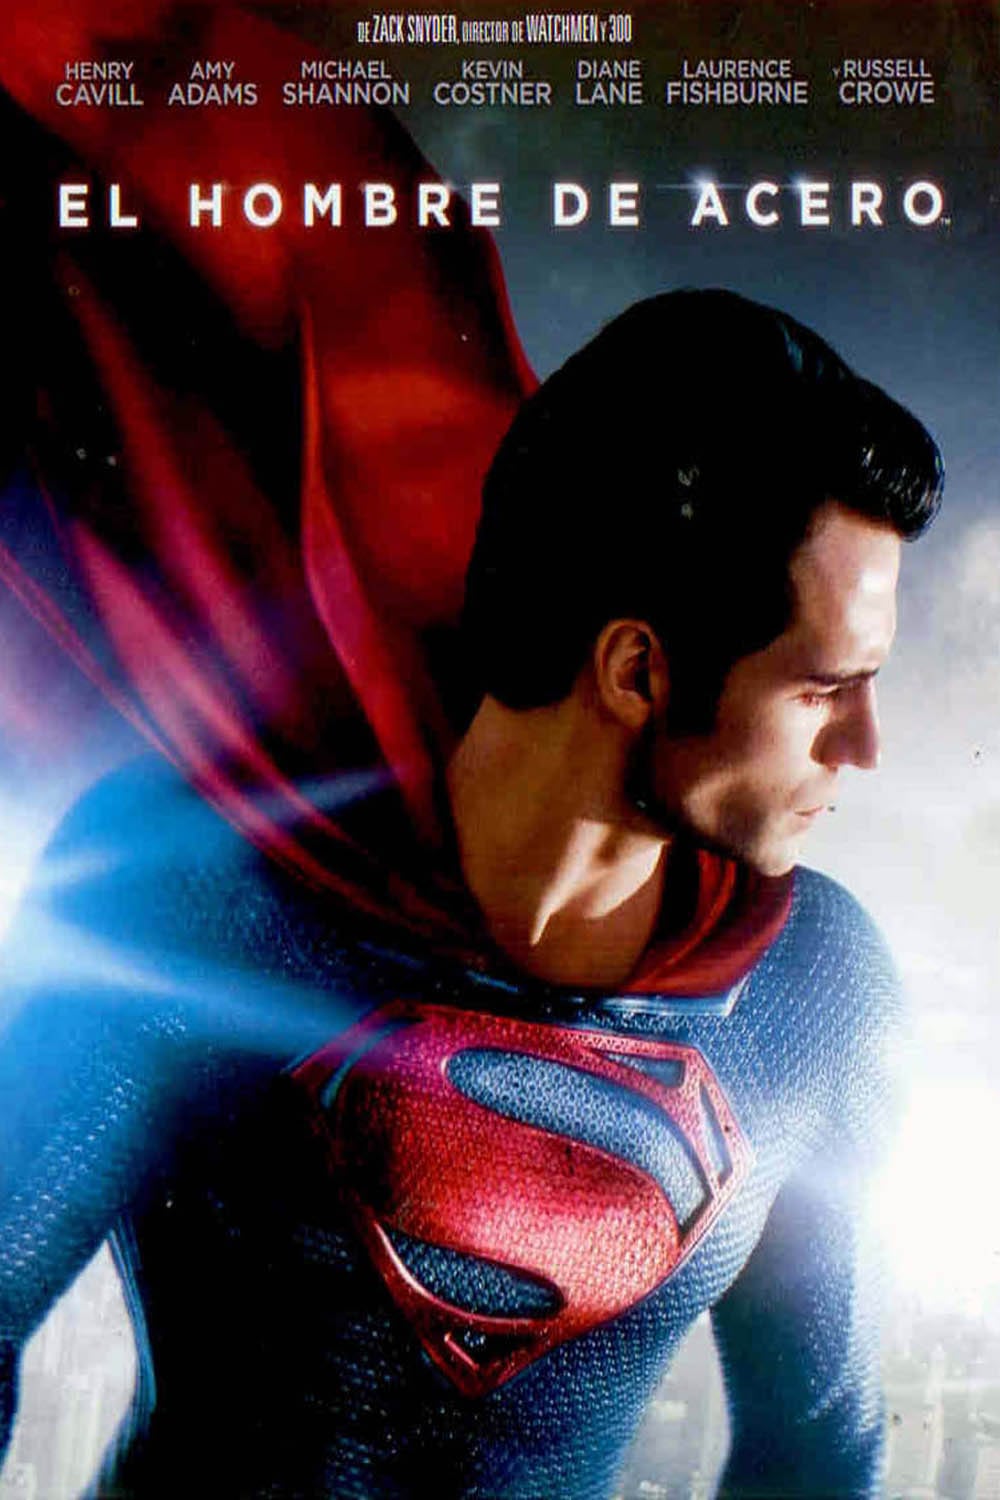 Ver Superman: El hombre de acero (2013) Online | PELISFORTE - El Hombre De Acero Pelicula Completa Castellano